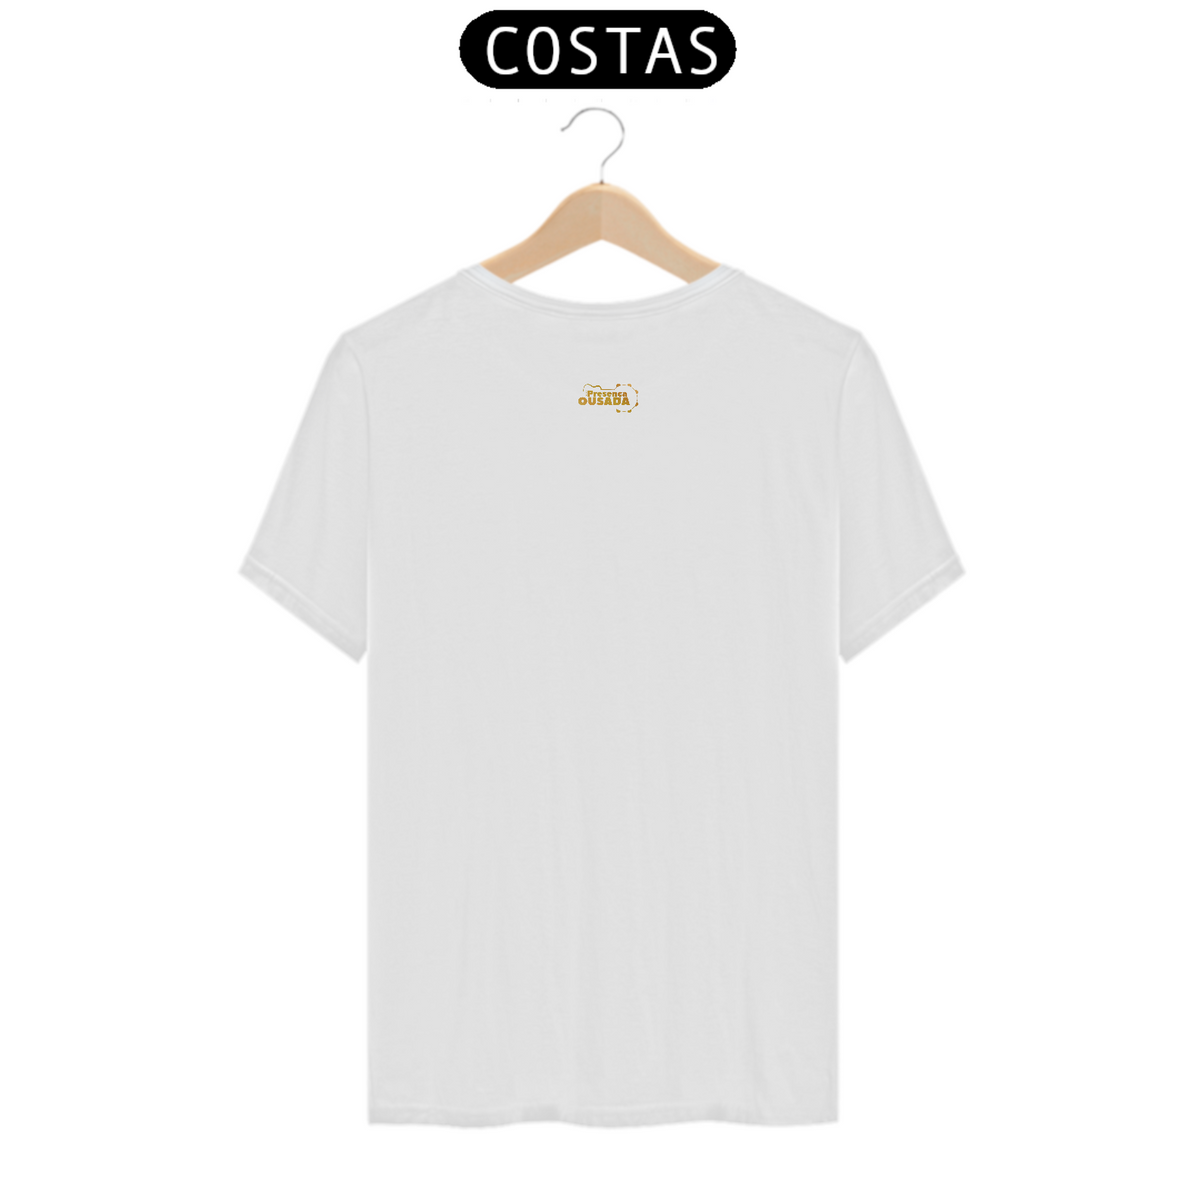 Nome do produto: T-shirt Classic Presença Ousada - Elegância Discreta